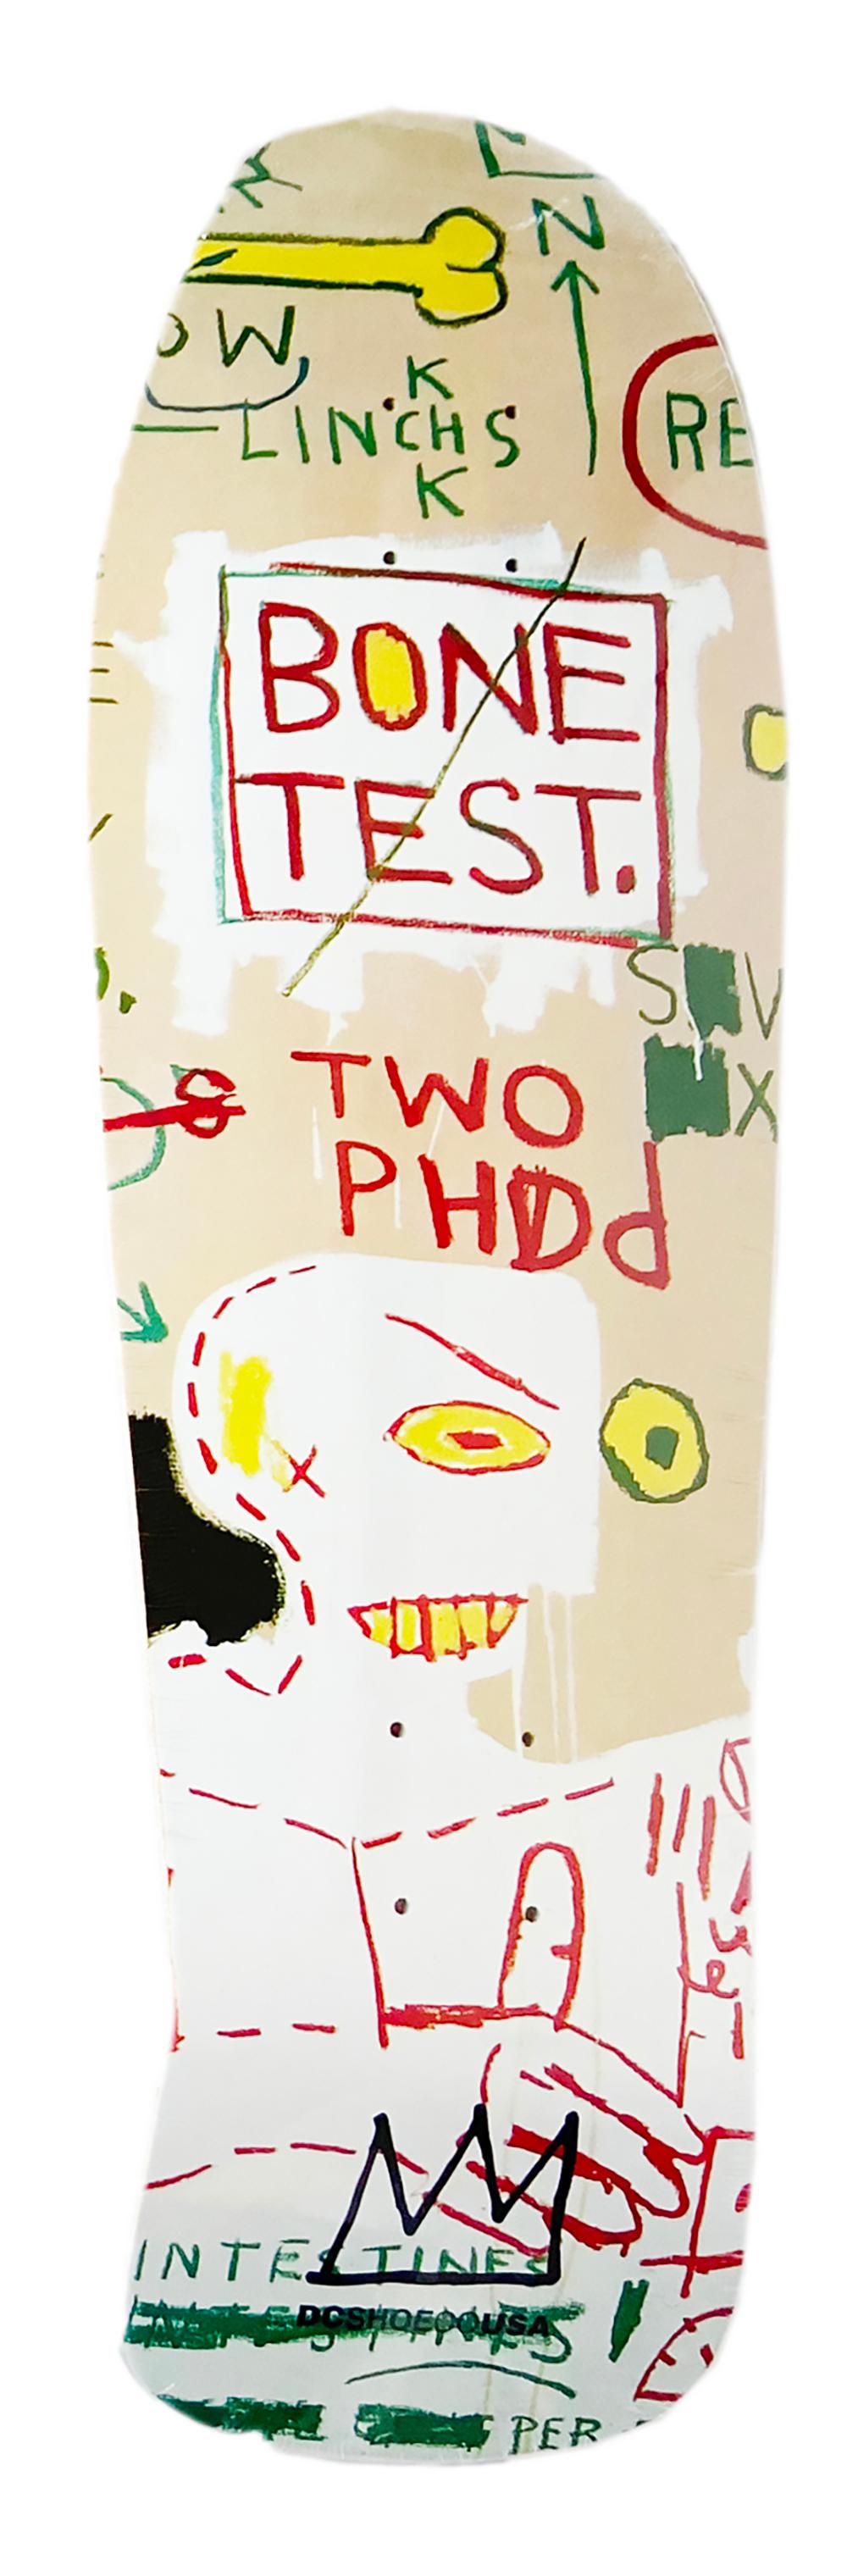 DC x Nachlass von Jean-Michel Basquiat Skate Deck
Hochdekoratives Deck, lizenziert vom Estate of Jean-Michel Basquiat in Zusammenarbeit mit Artestar im Jahr 2021, mit lizenzierten Bildern von Basquiats Carbon aus den frühen 1980er Jahren ("Bone